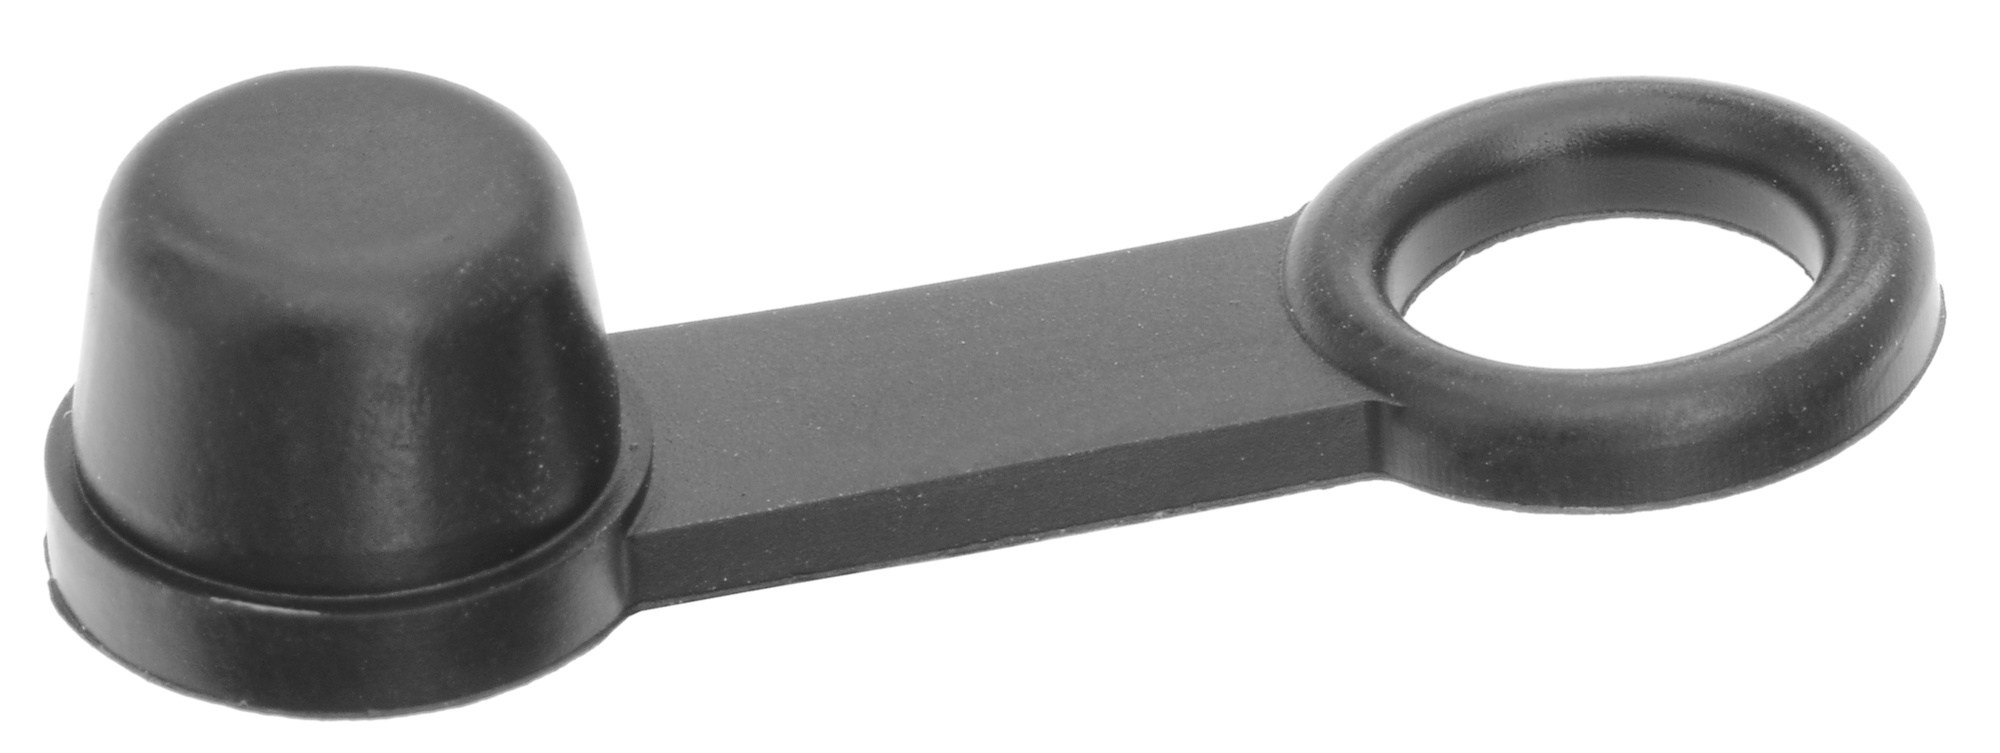 Obrázek produktu čepičky odvzdušňovacího ventilu brzdového třmenu (10 ks), Tourmax BBC-001